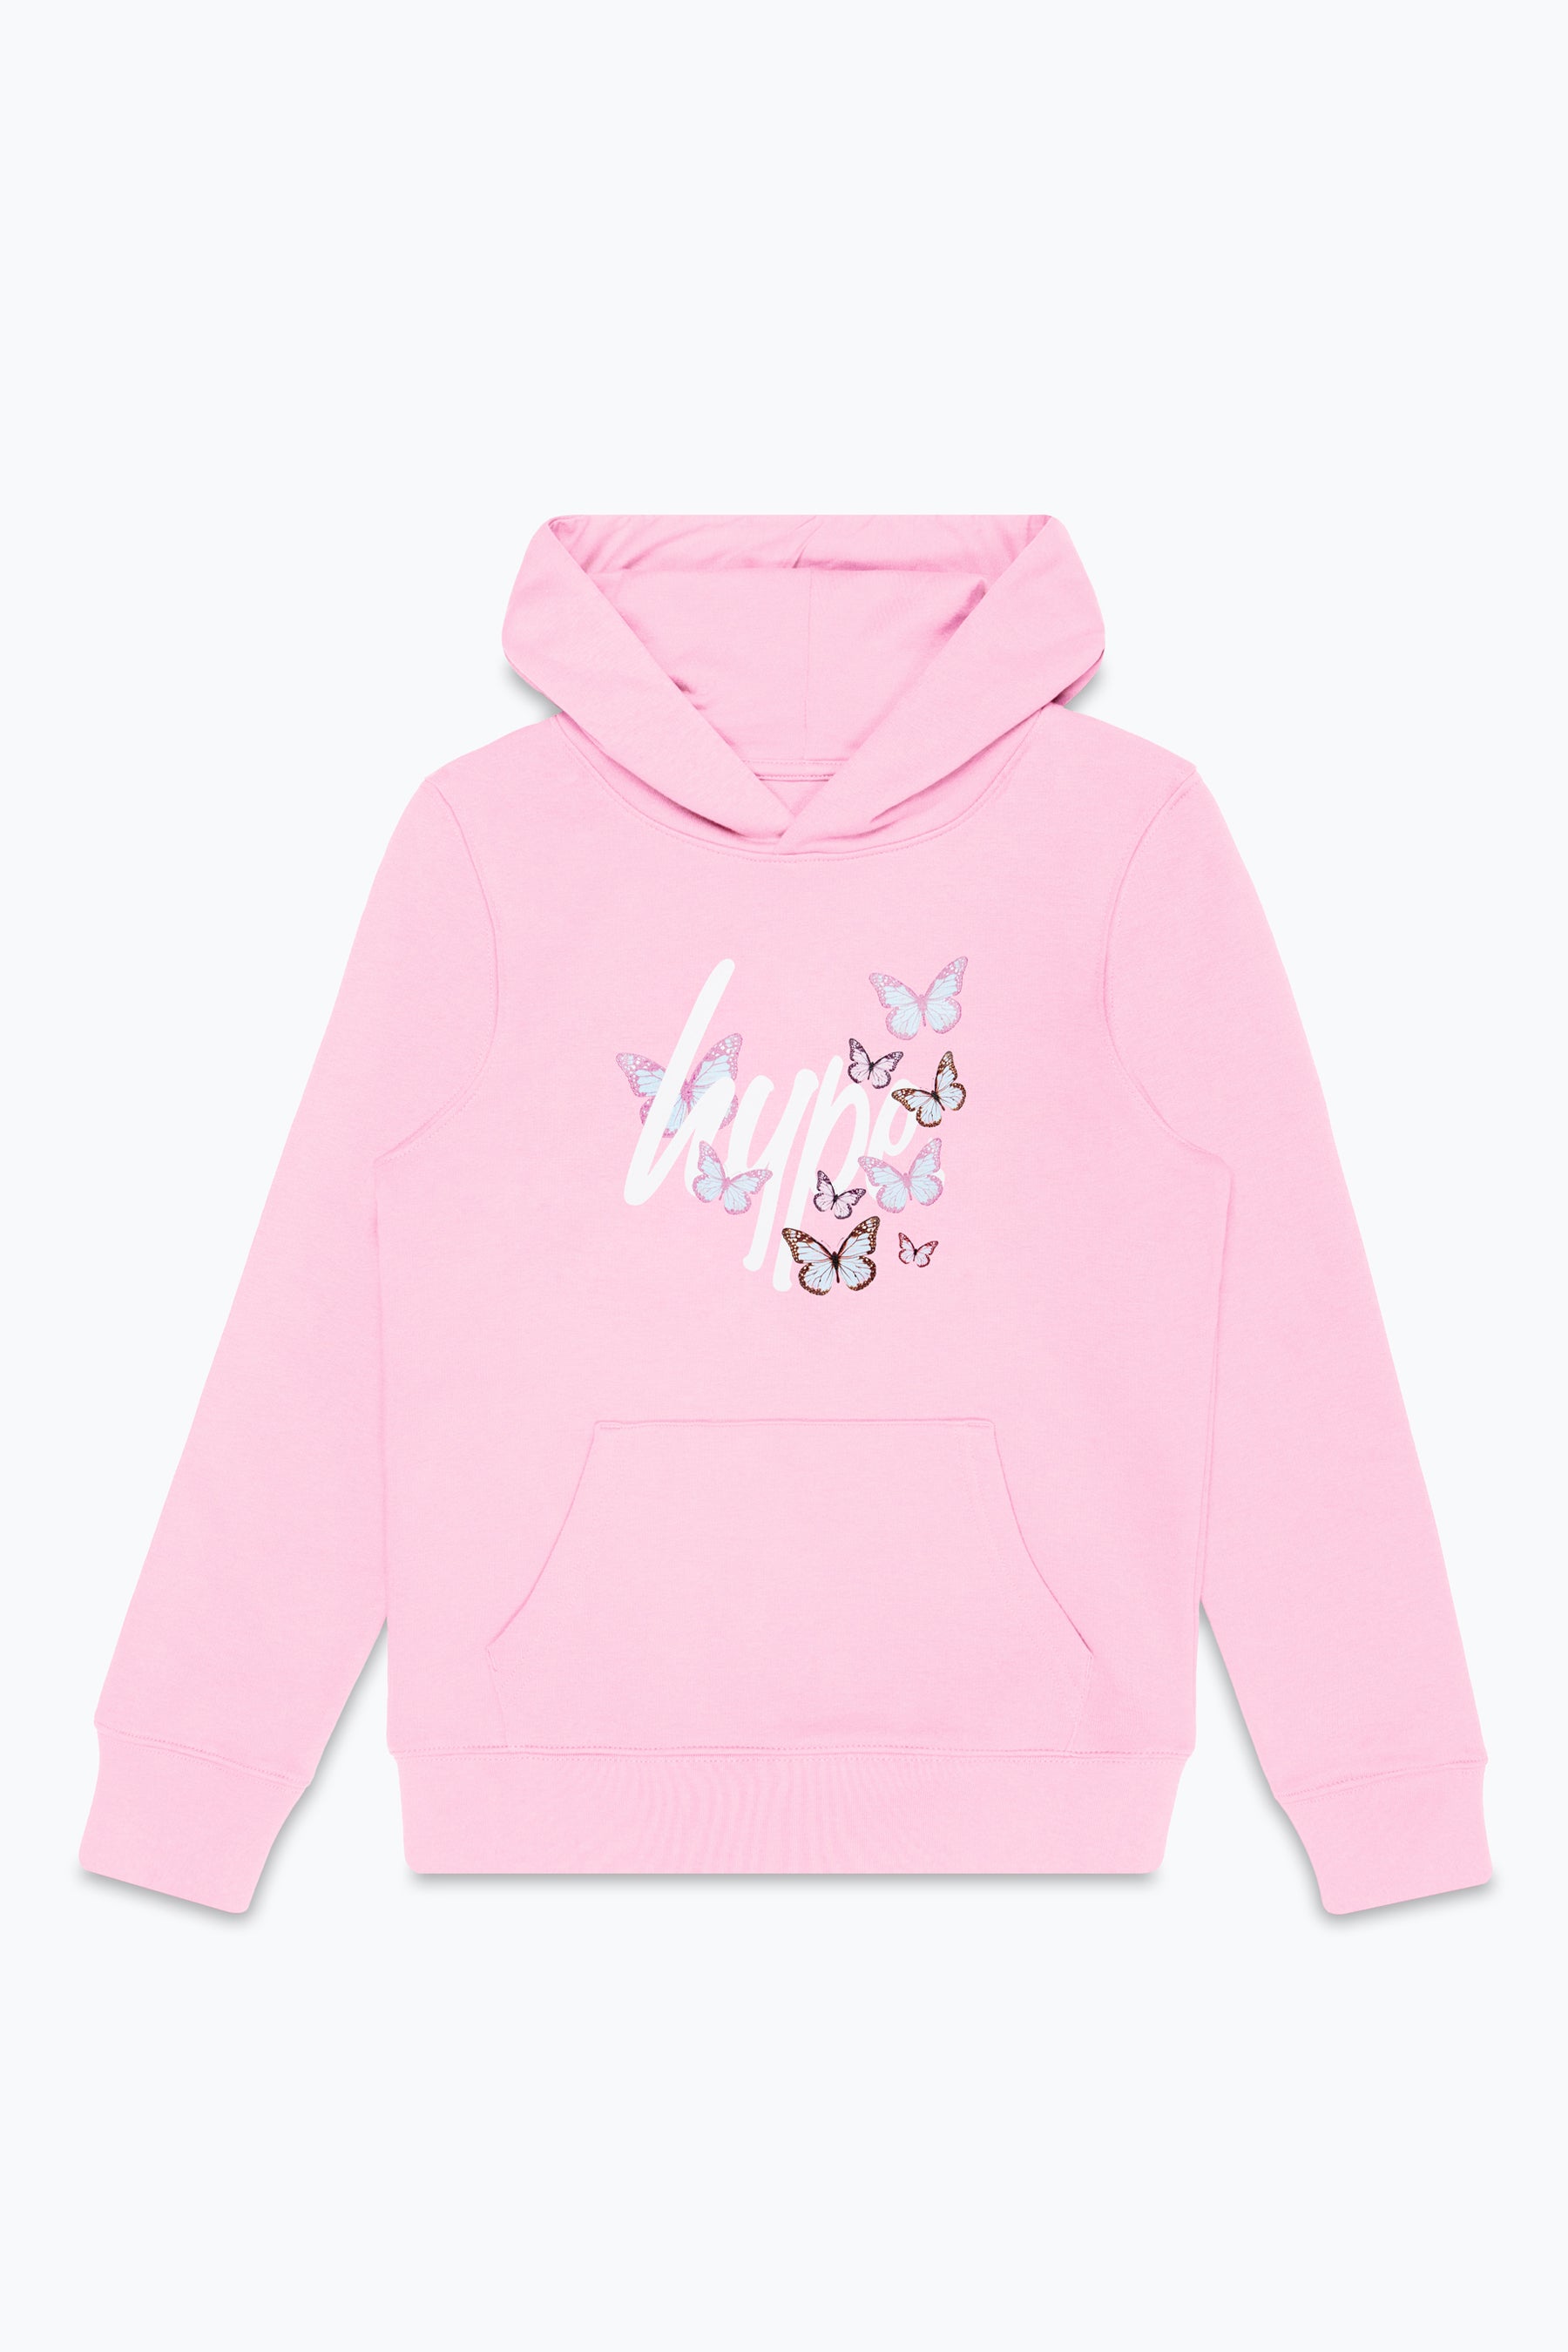 hype kids pink butterfly script hoodie